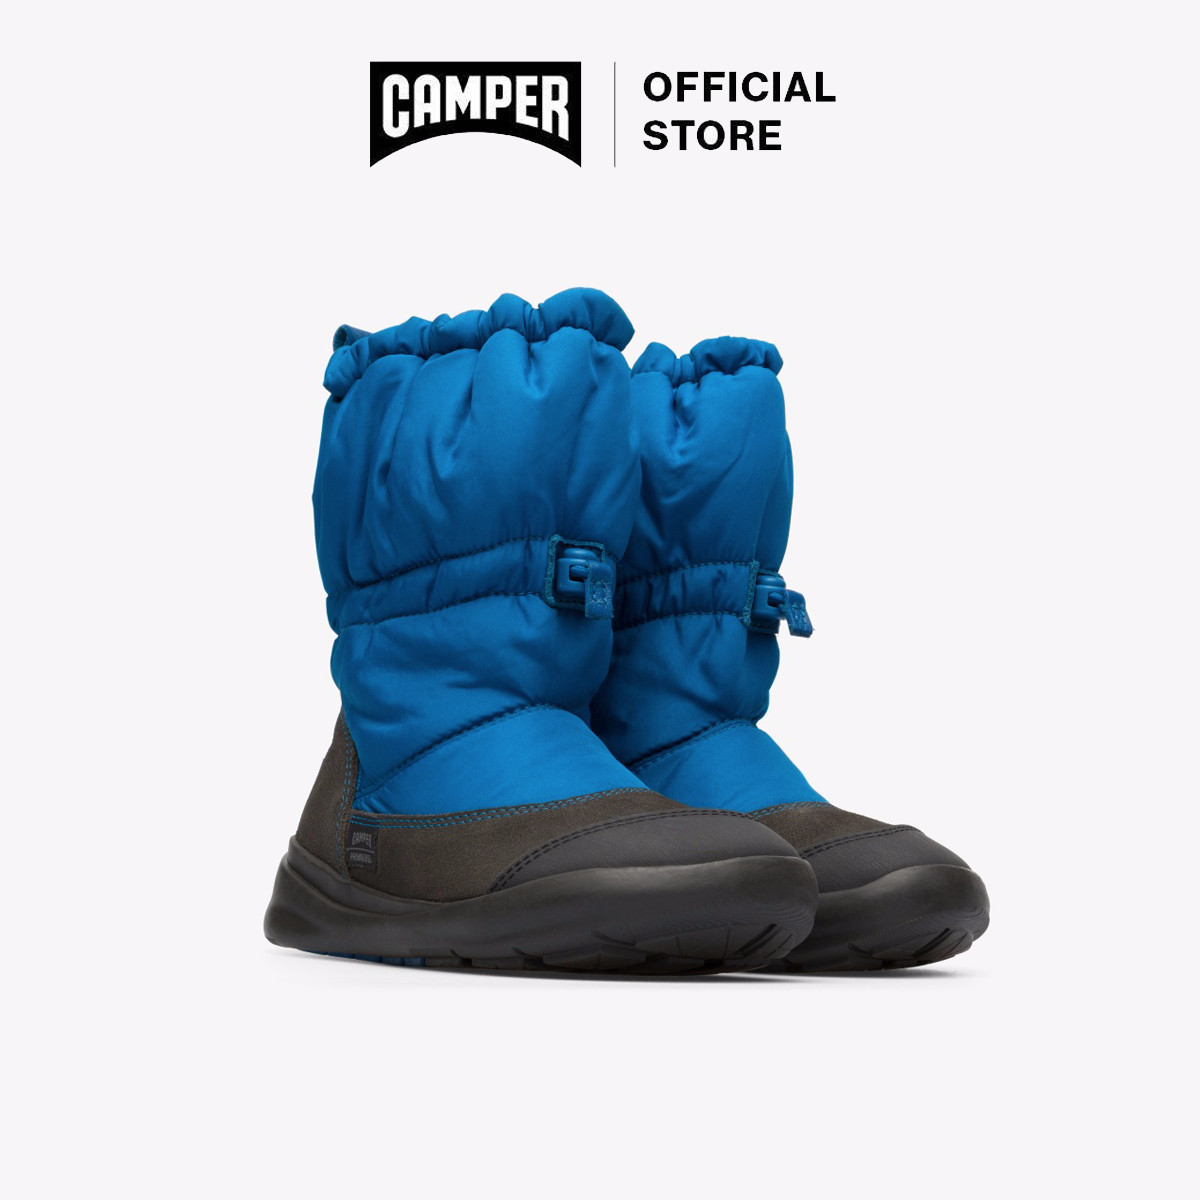 รองเท้าเด็กผู้ชาย CAMPER K900228-002 ERG0 RUB.NEG PARKA COSMIC ERGO METEOR-COSMIC สีน้ำเงิน